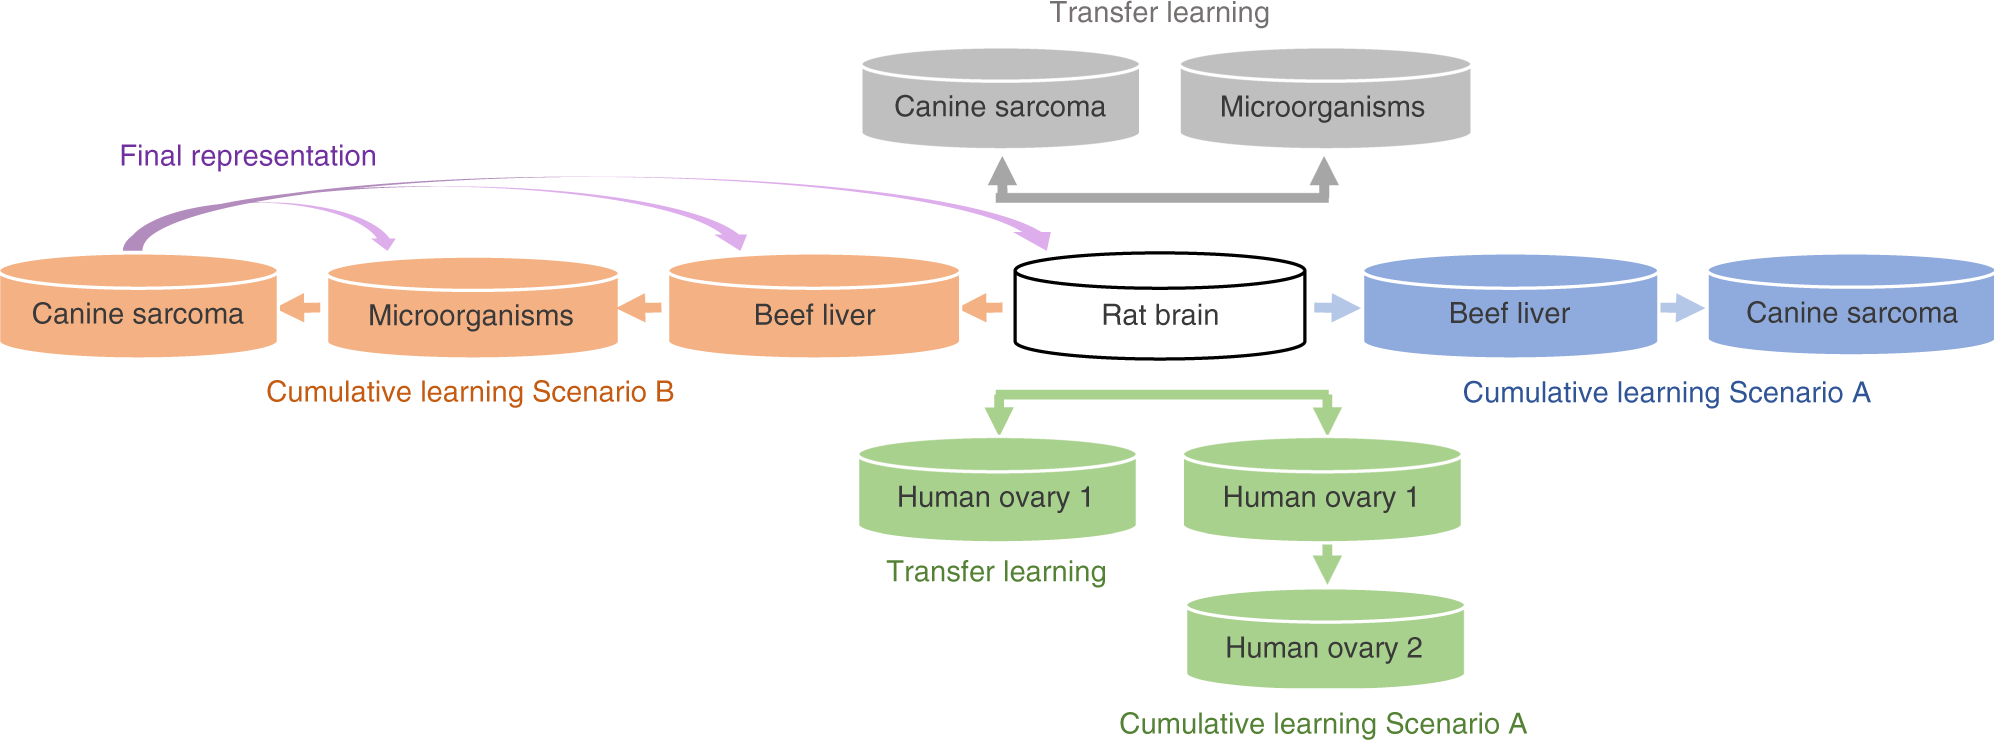 A survey on heterogeneous transfer learning